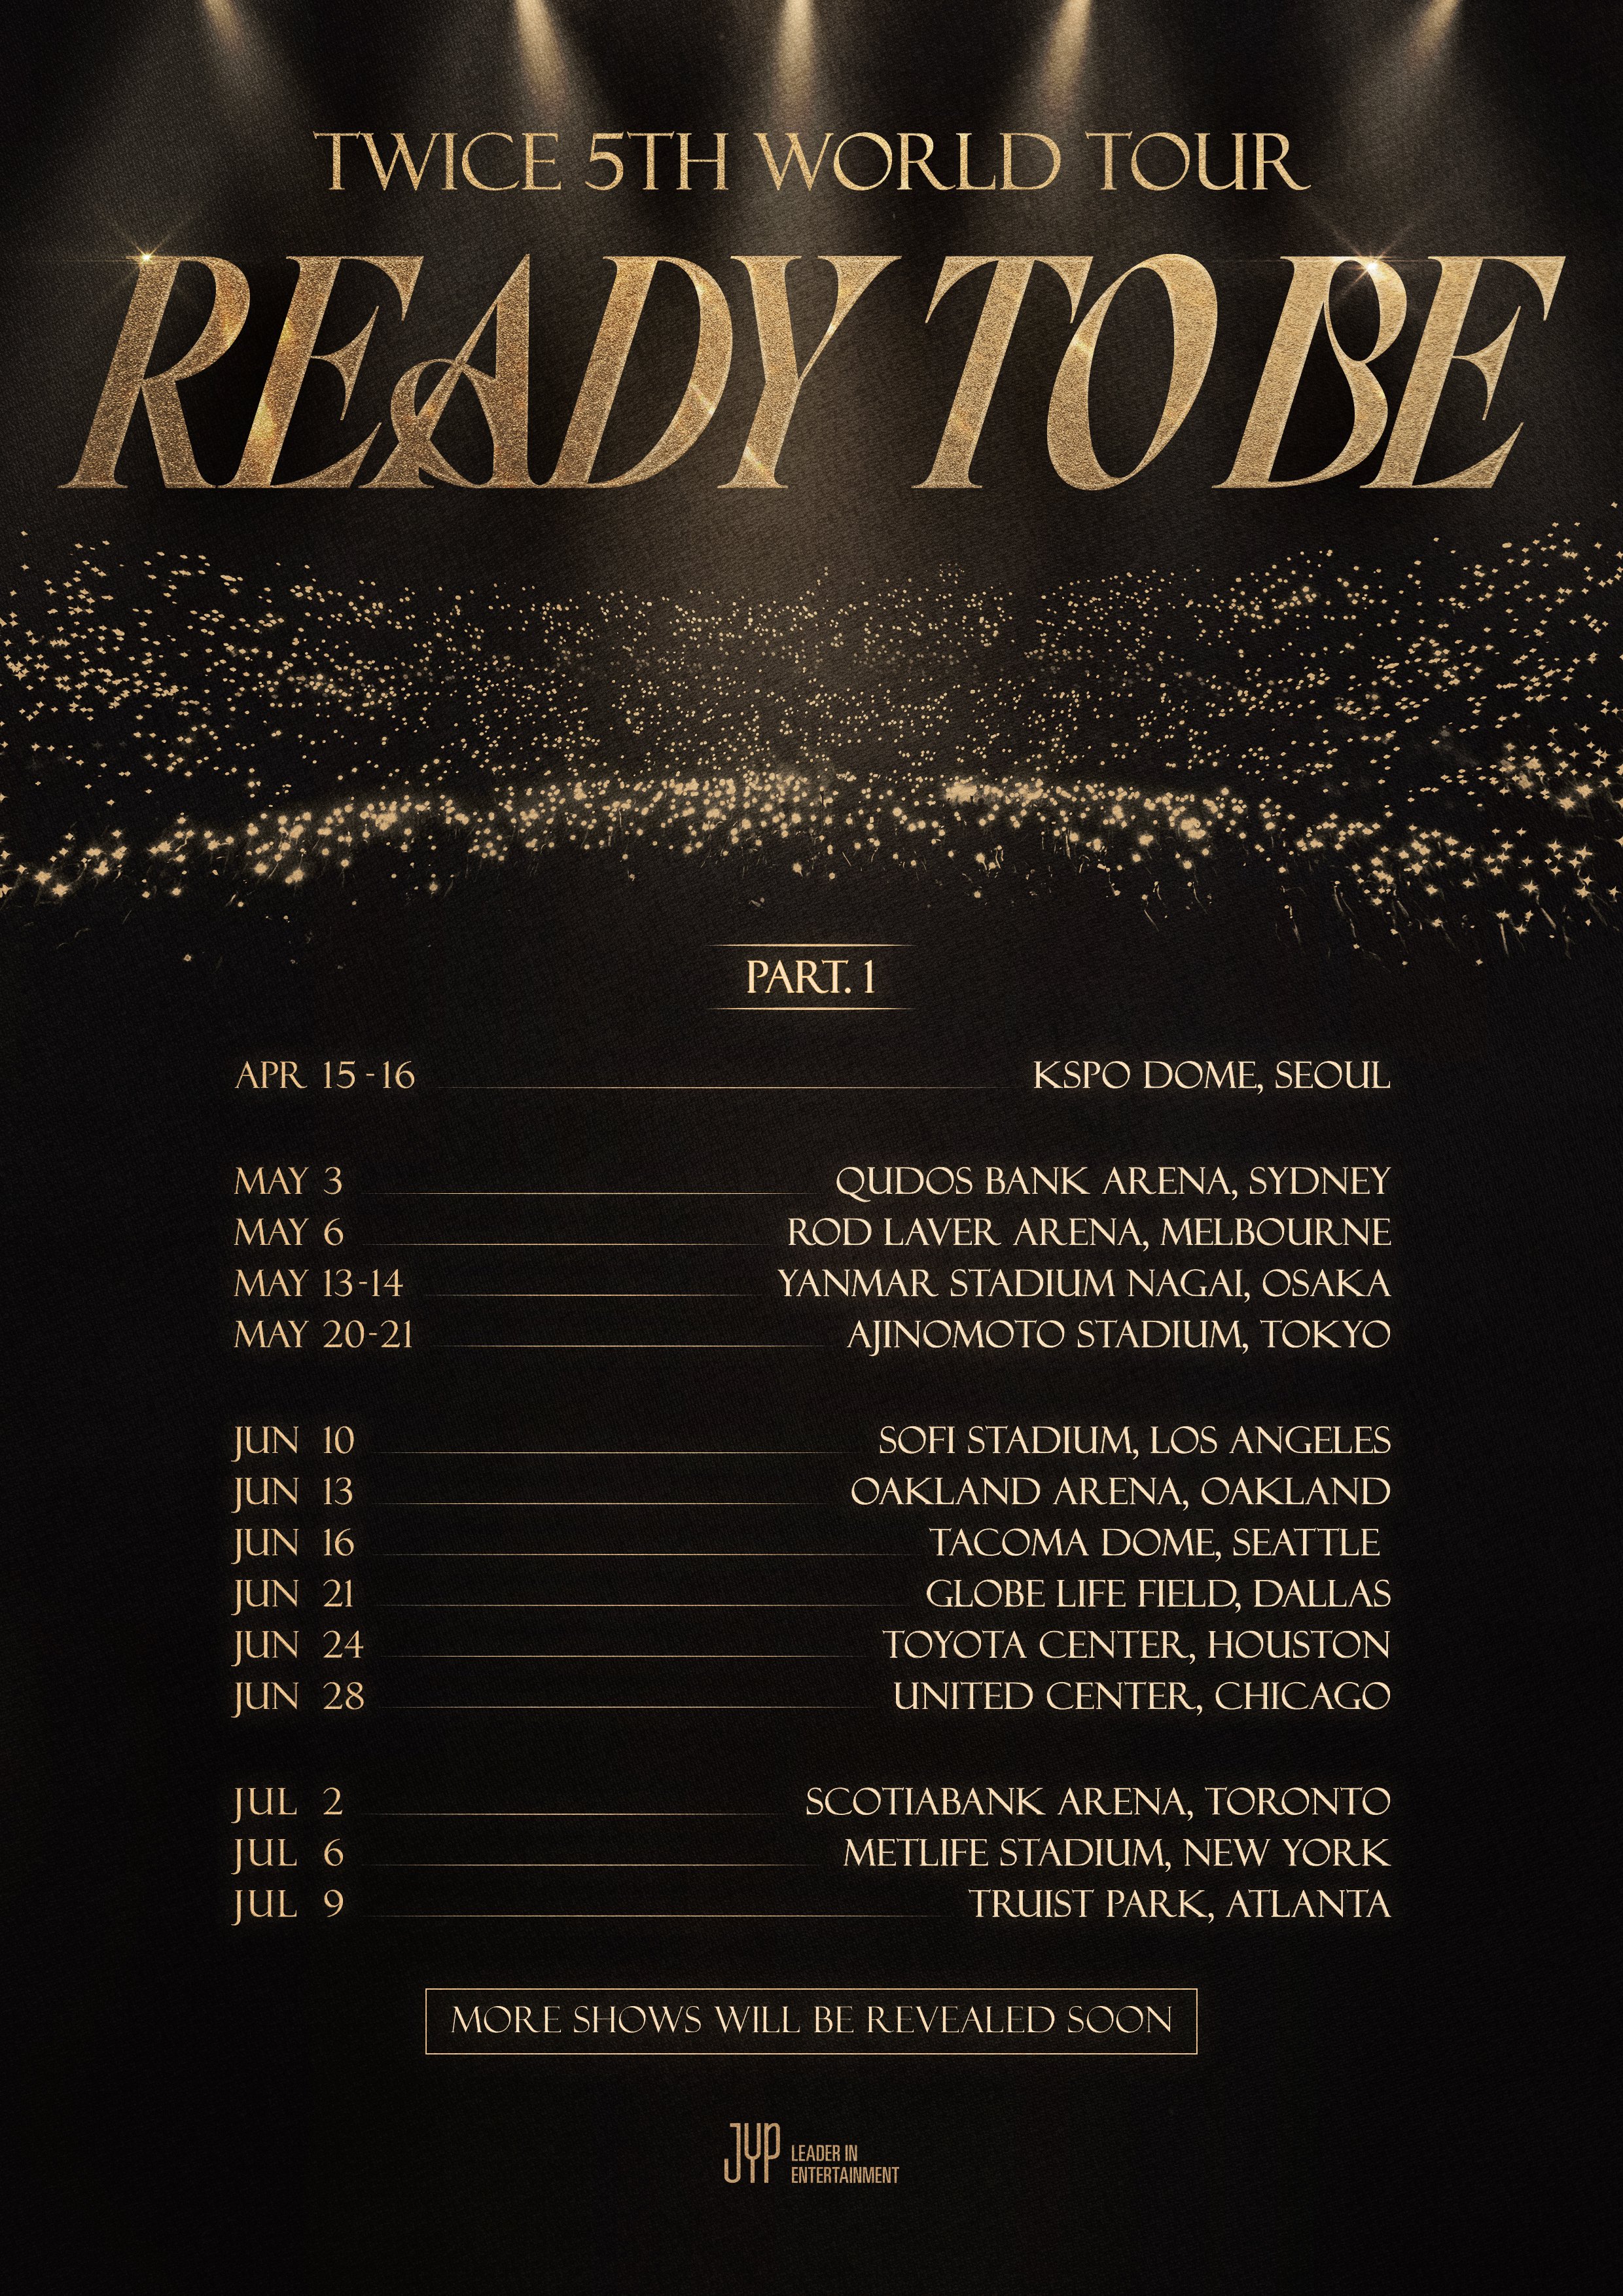 TWICE 5th World Tour 'READY TO BE' | Twice Wiki | Fandom